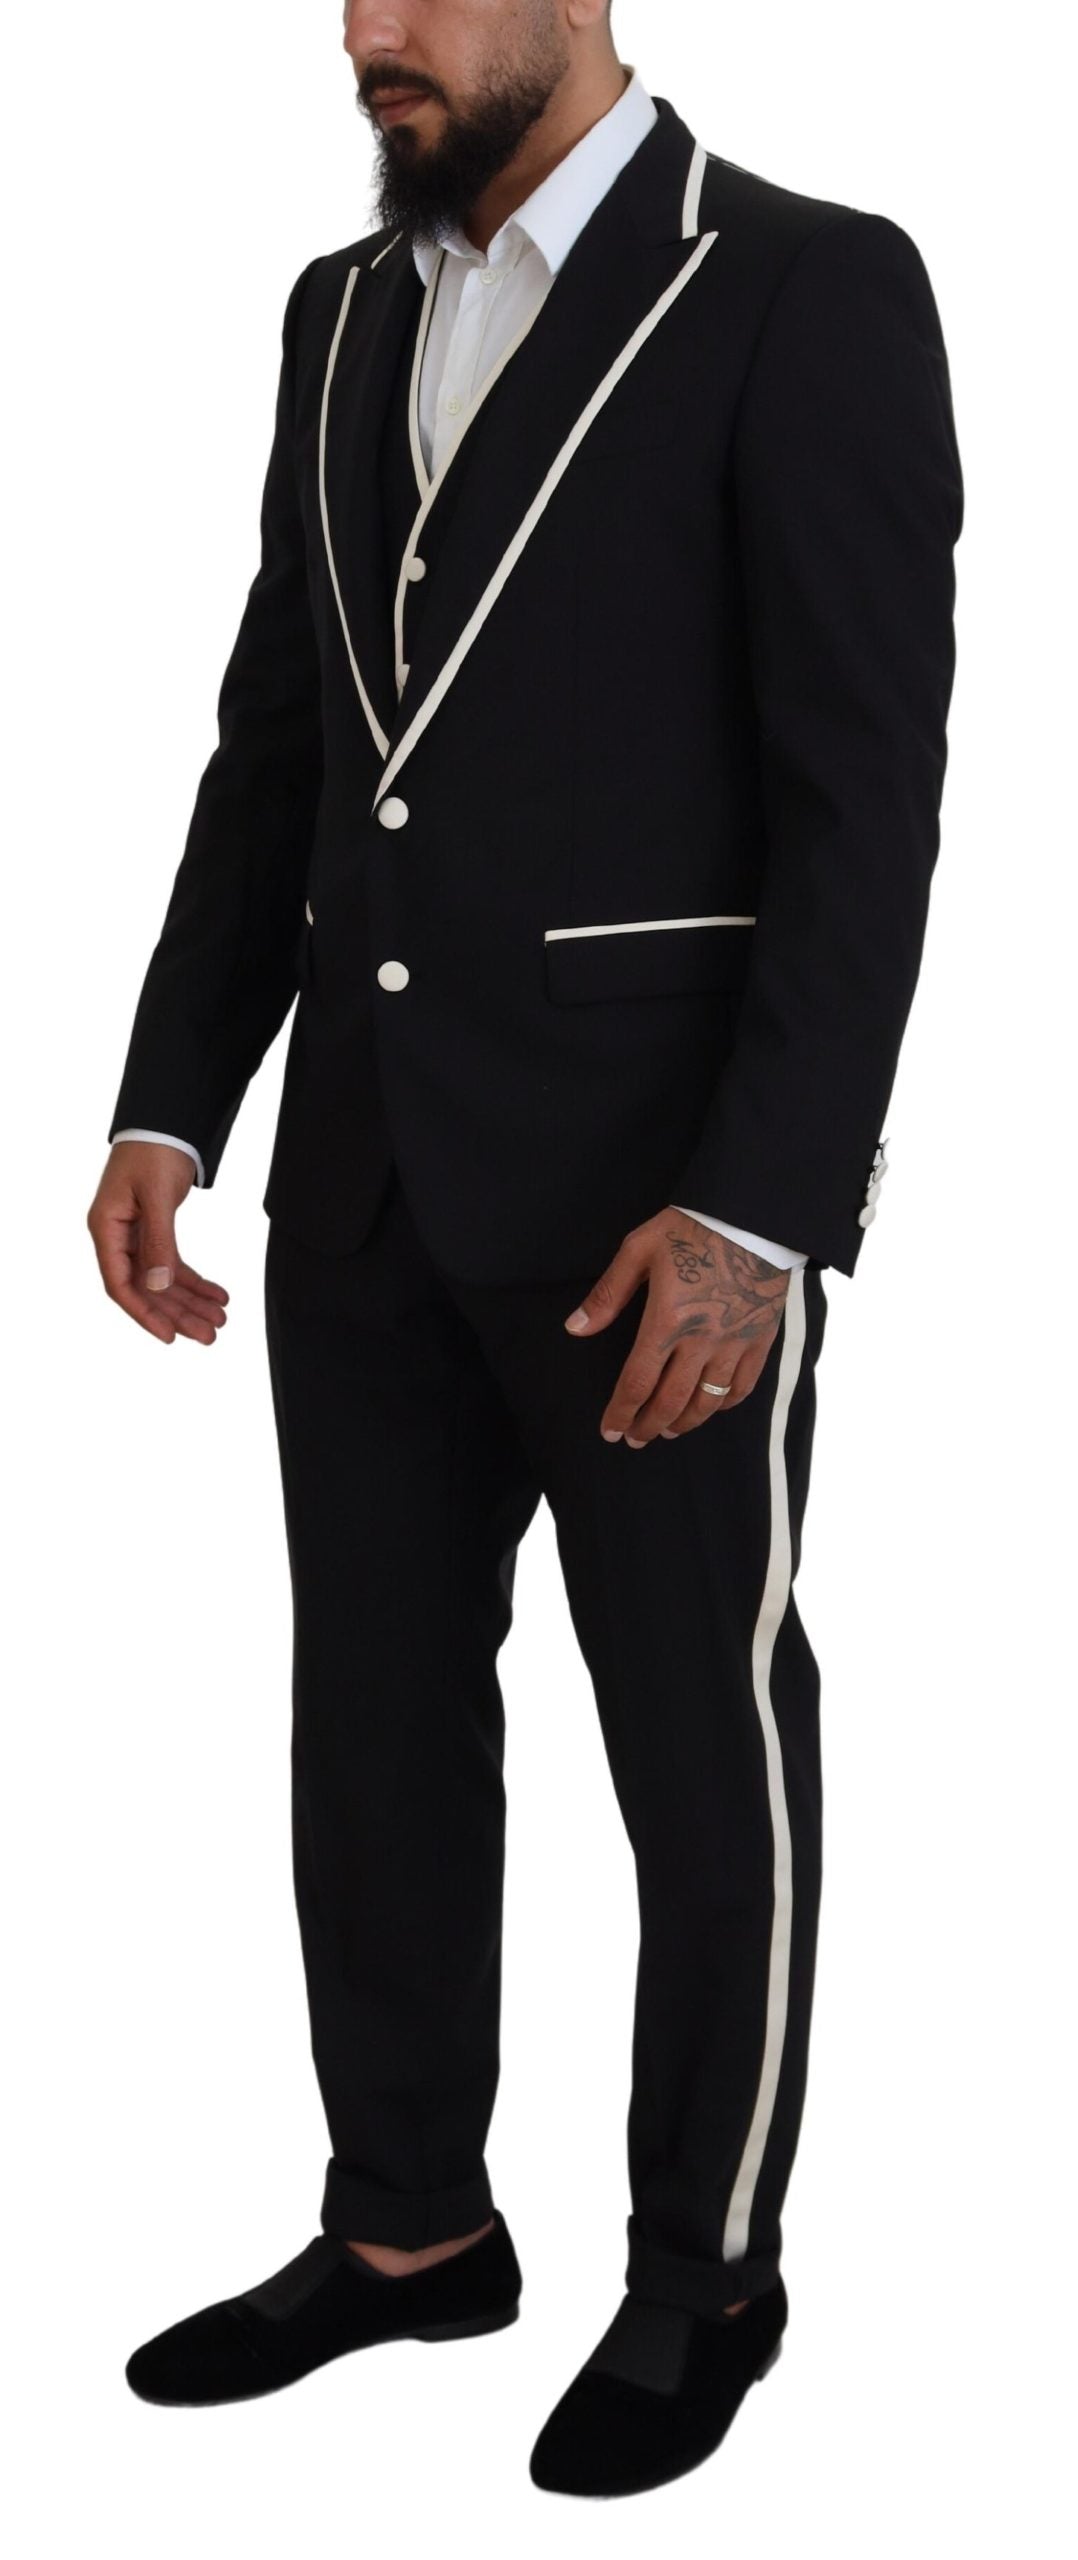 Elegant Black and White Slim Fit Three Piece Suit